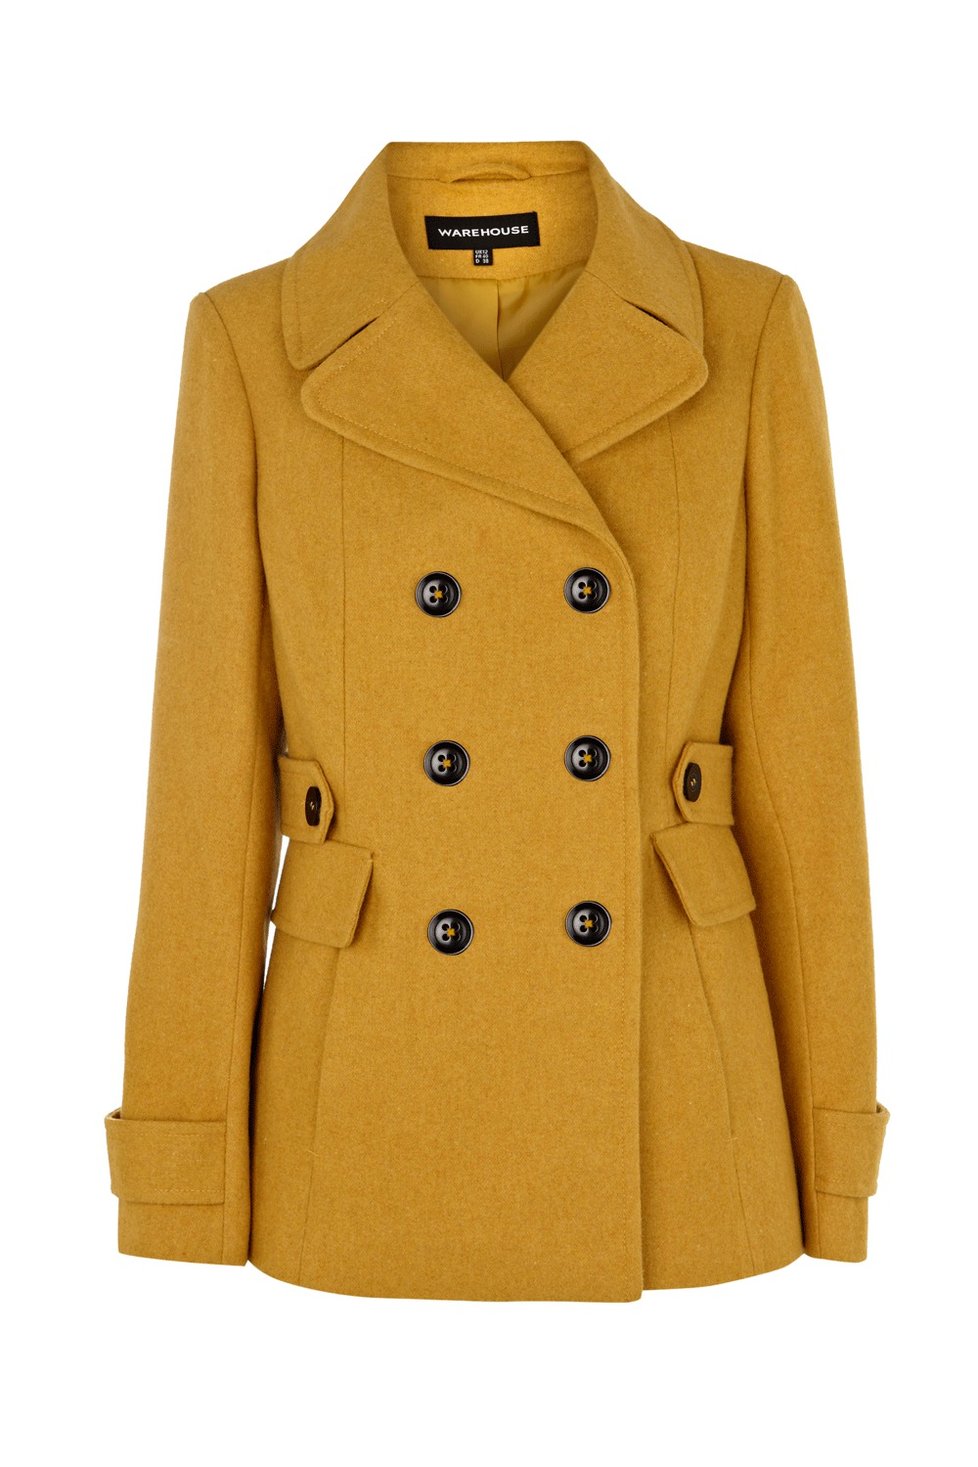 Hořčicově žlutý kabát, La Femme, 1950,- Kč